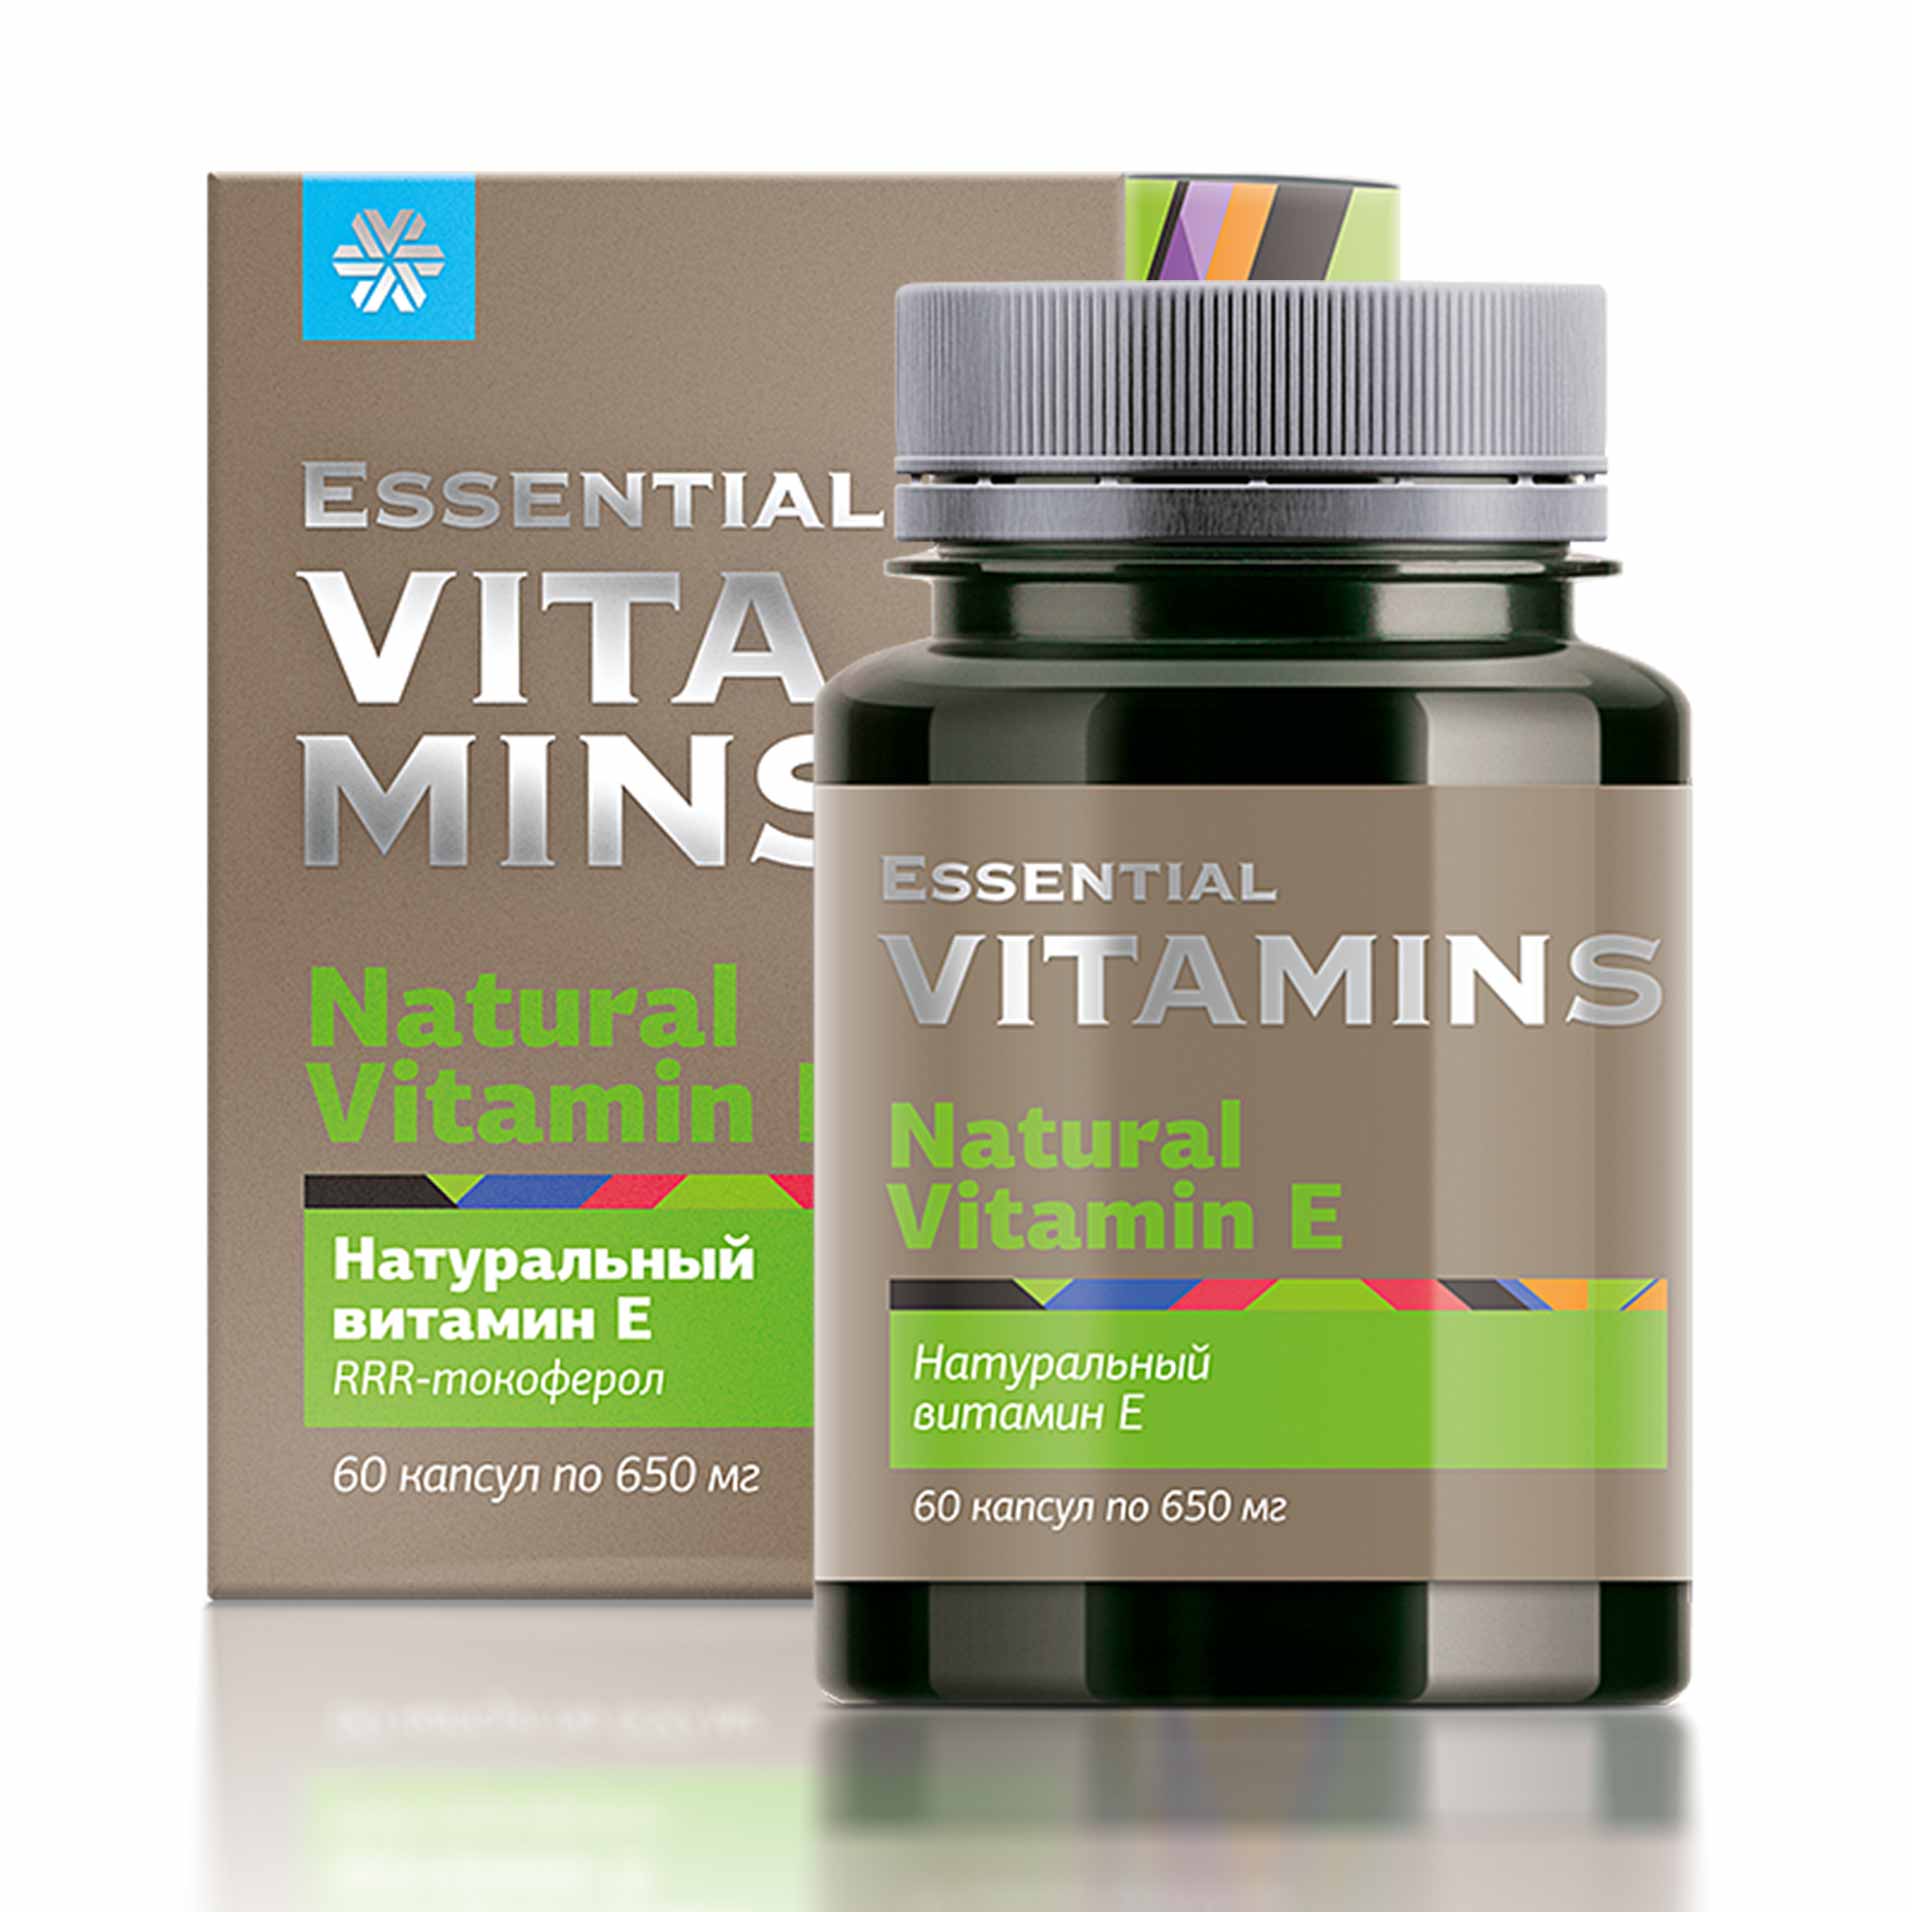 Изображение отсутствует.
			Купить Натуральный витамин E - Essential Vitamins //  // 